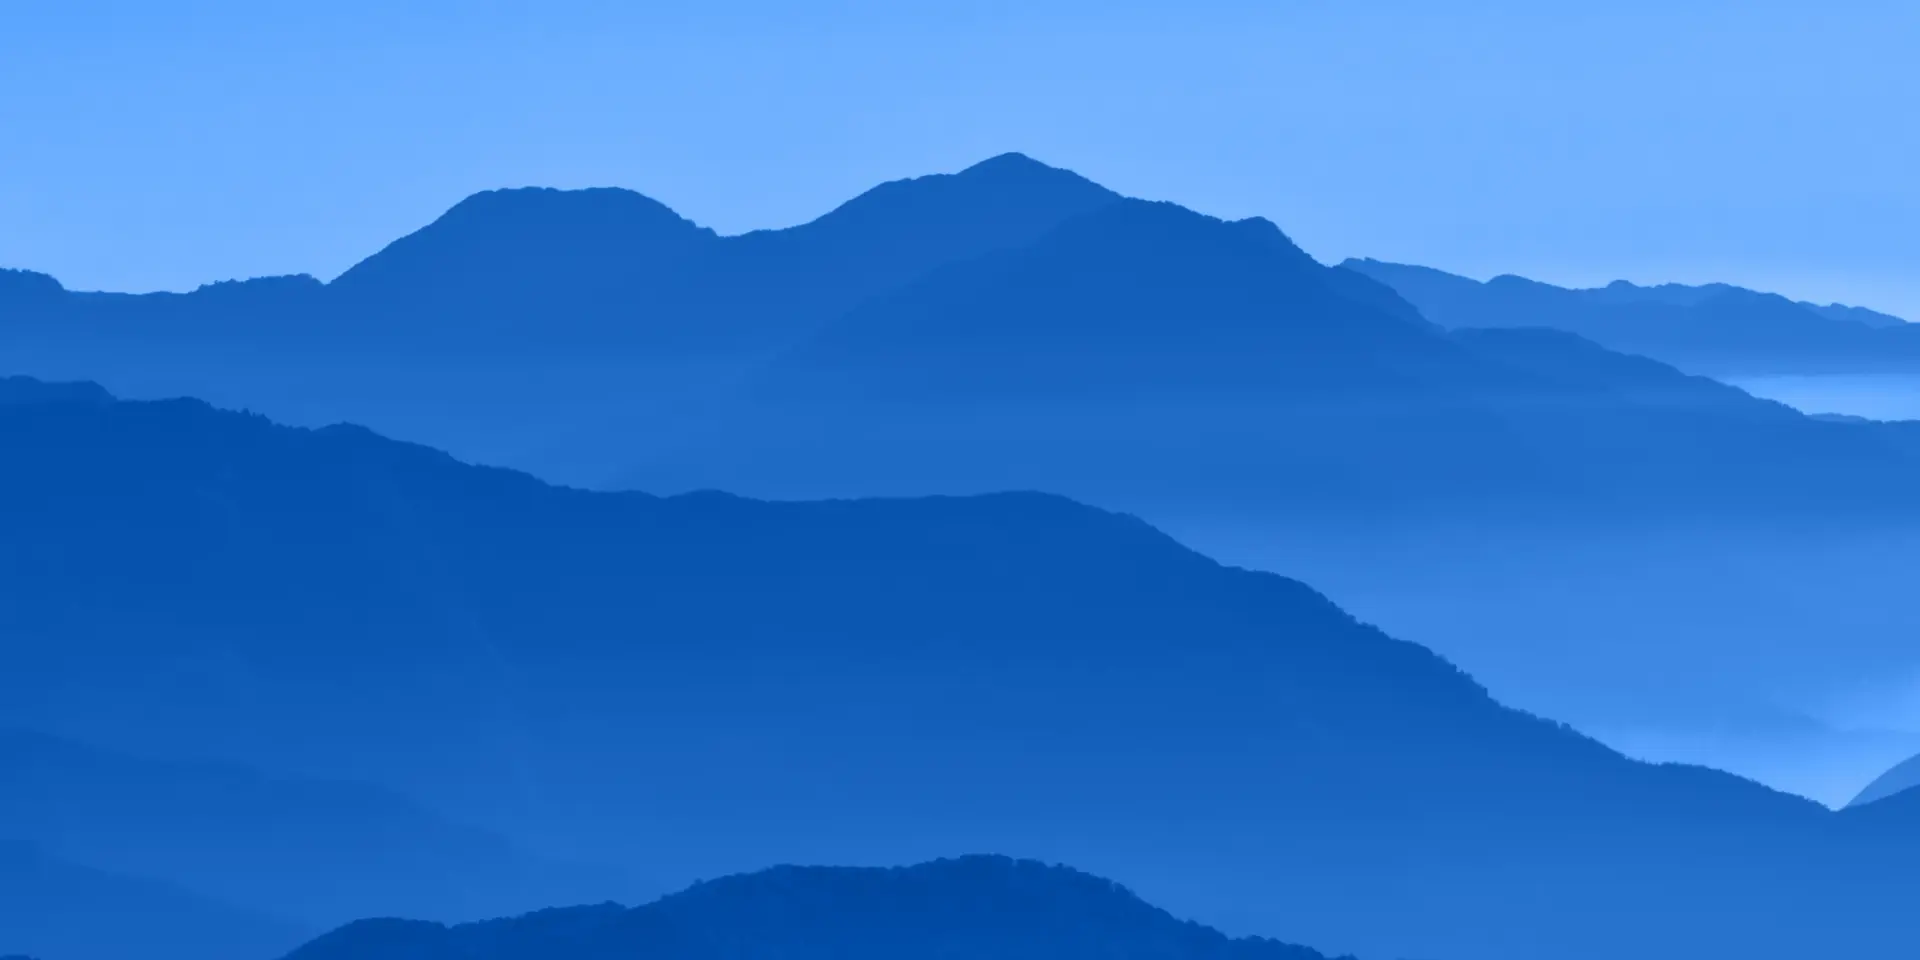 Photographie bleue monochromatique des montagnes qui s’éloignent de l’appareil photo.